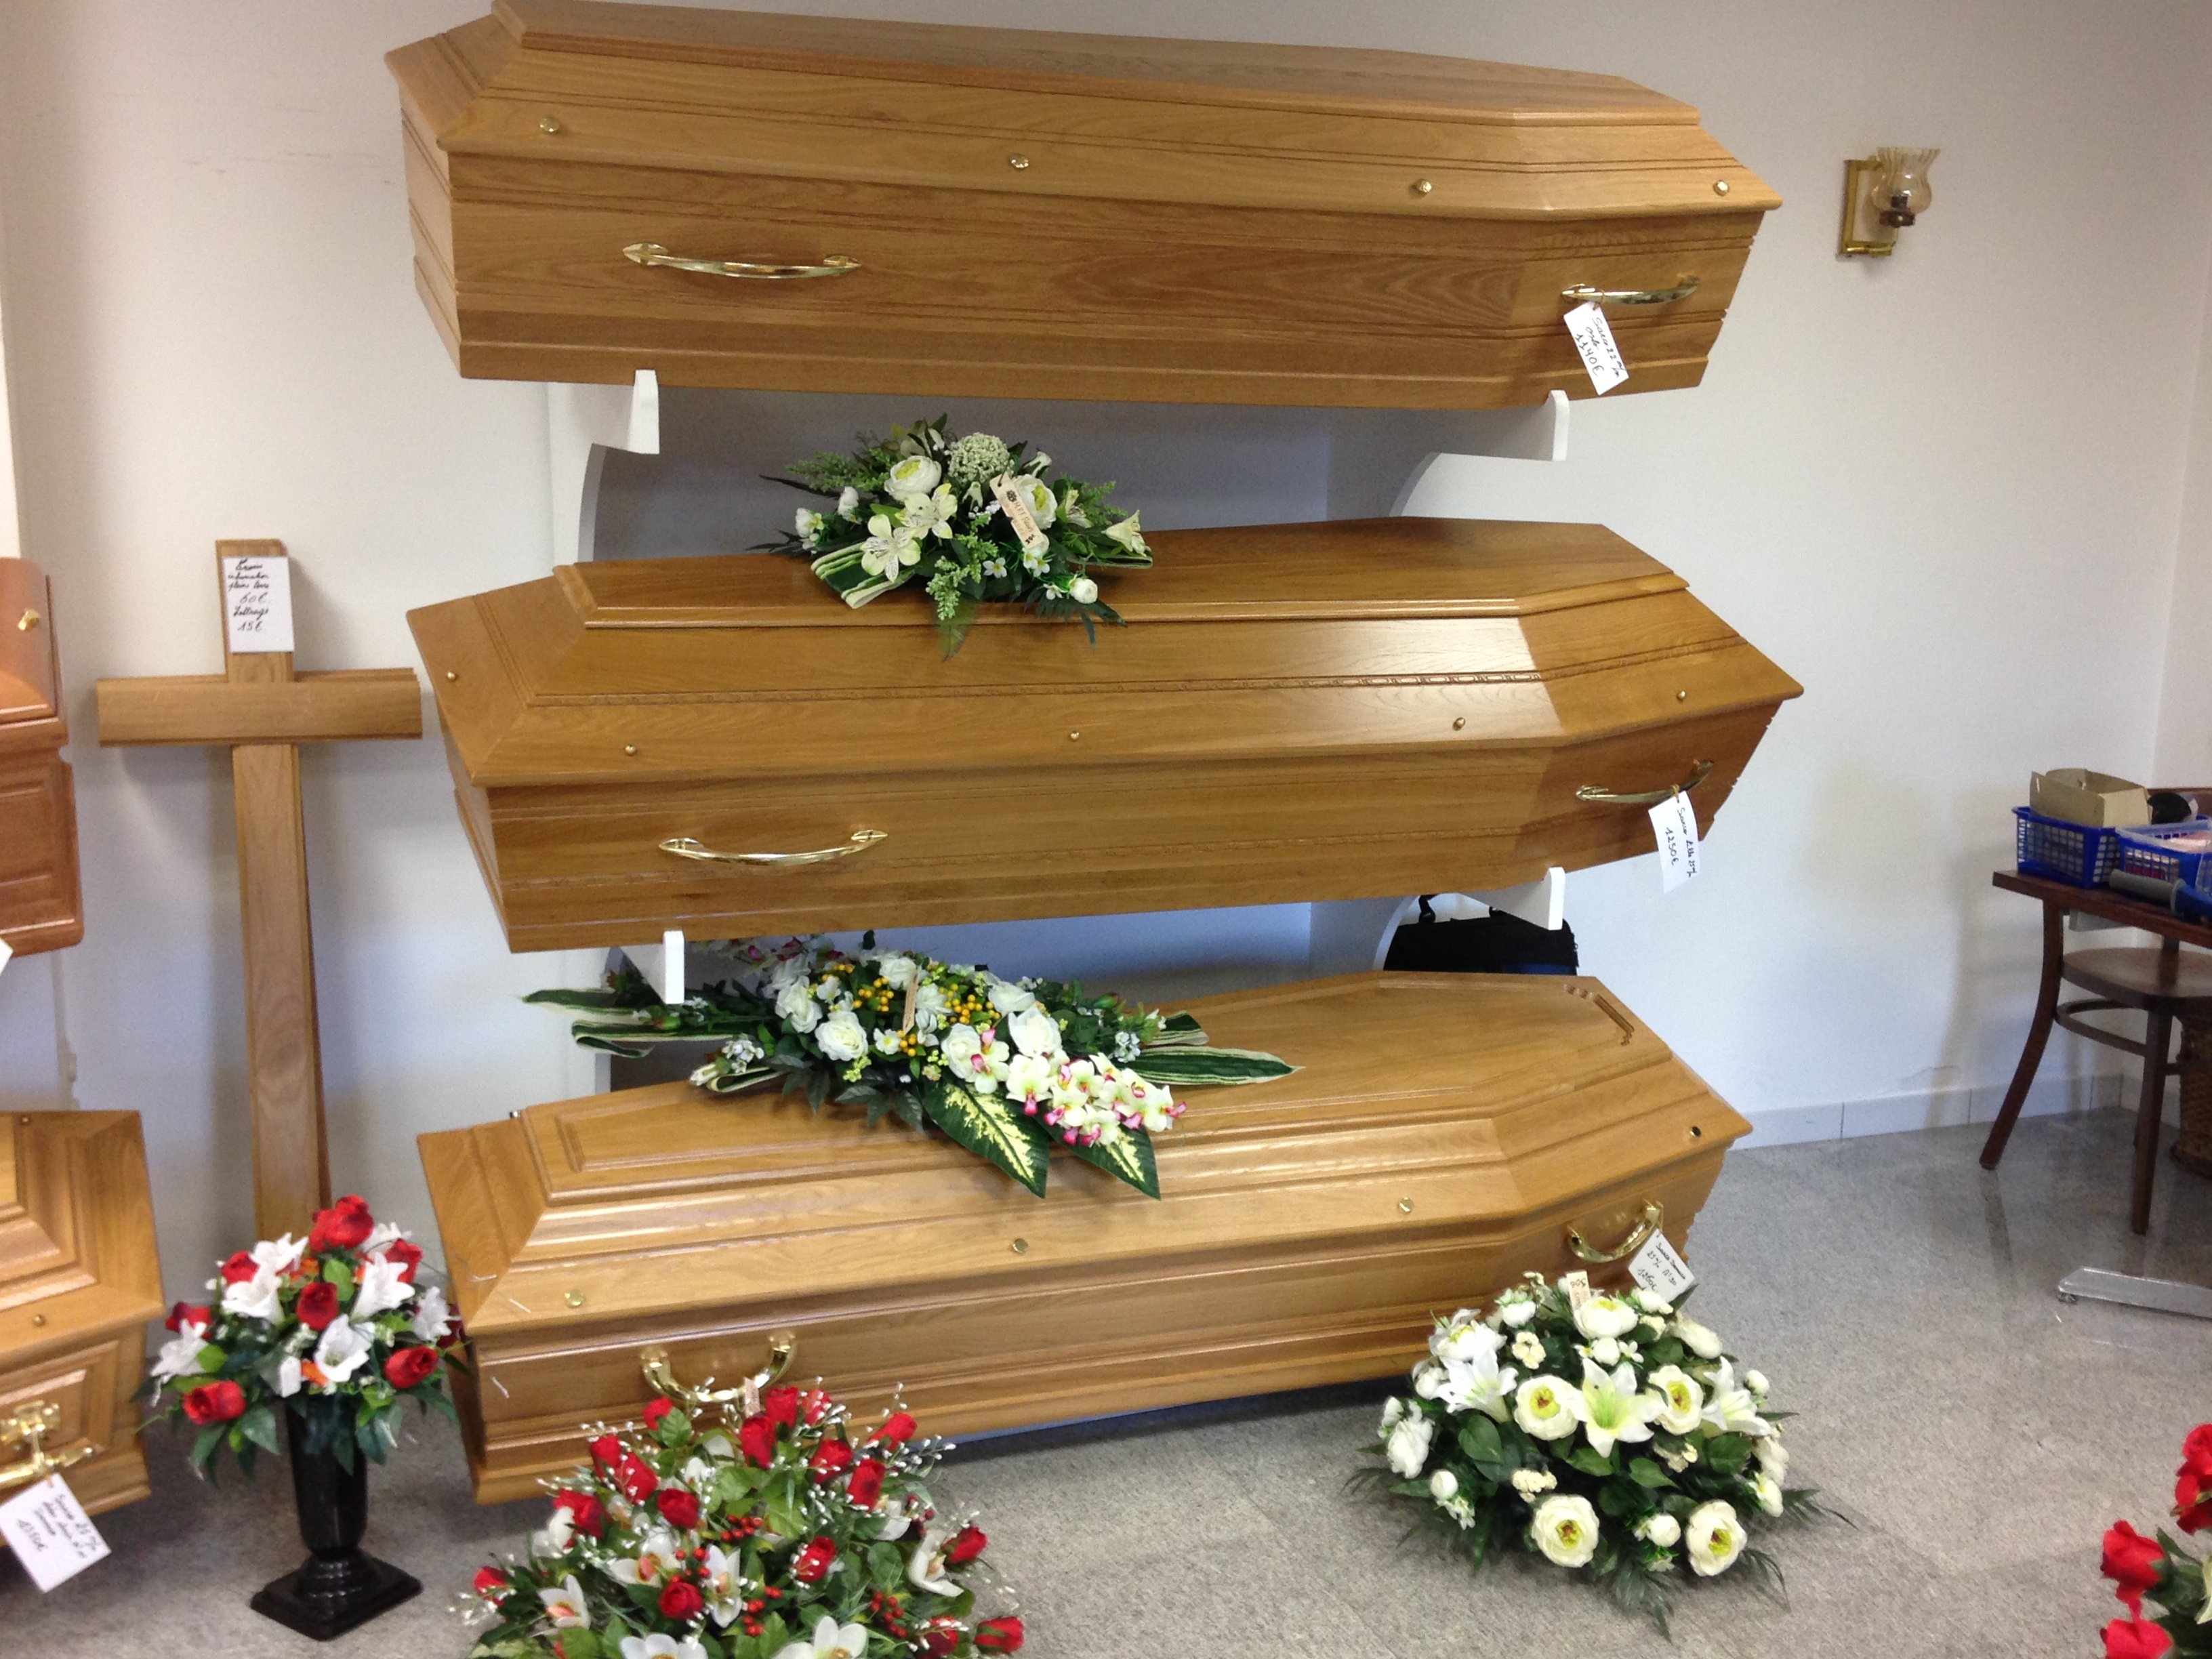 Les pompes funèbres Adam-Hospital propose un large choix de cercueils et